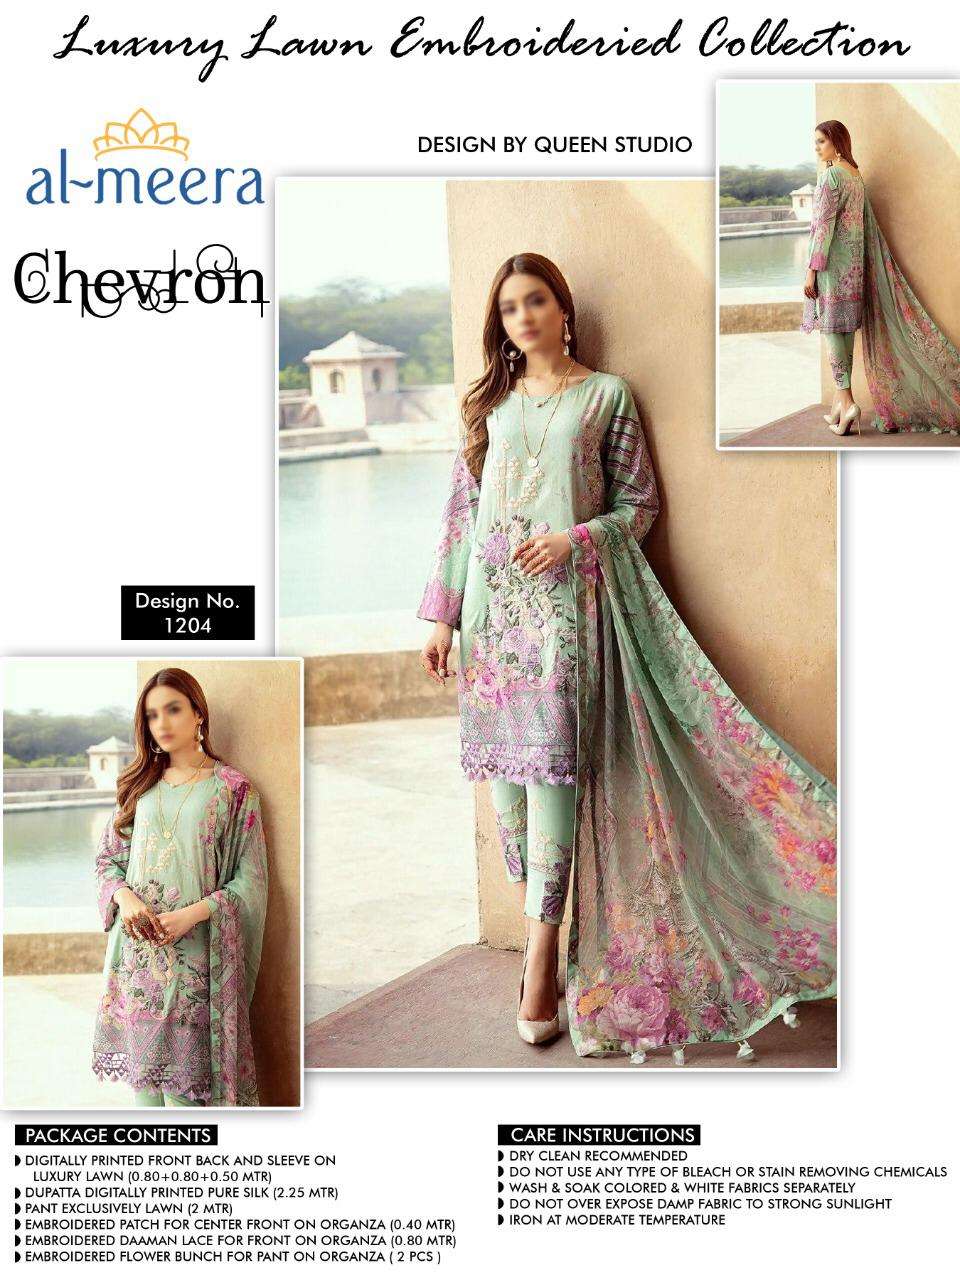  Al Meera Chevron Vol 2 Fancy Pakistani Suit Catalogs Supplier